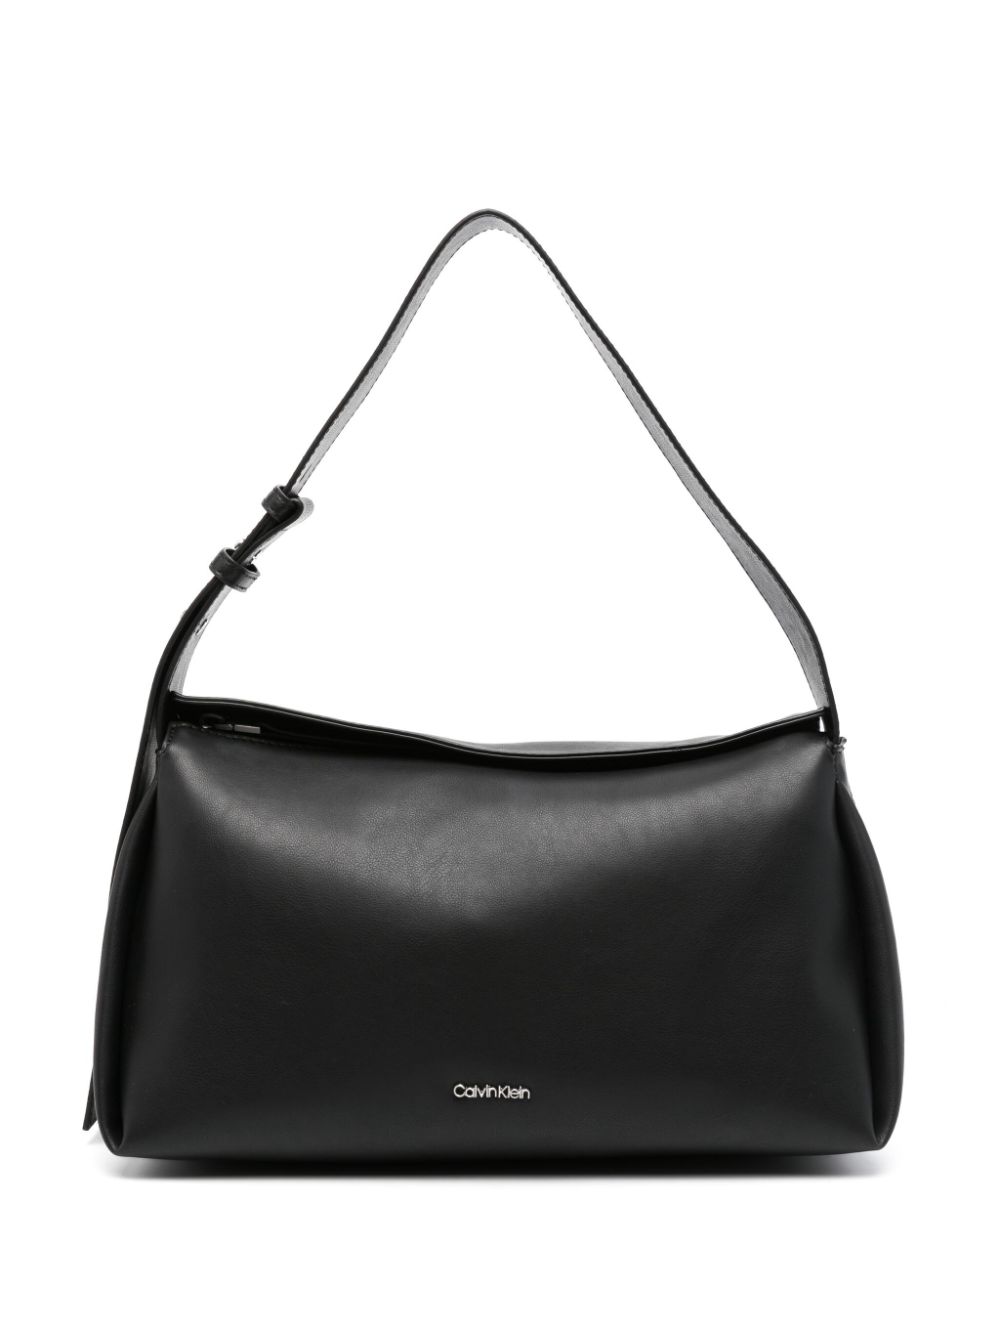 Calvin Klein Gracie shoulder bag - Black von Calvin Klein